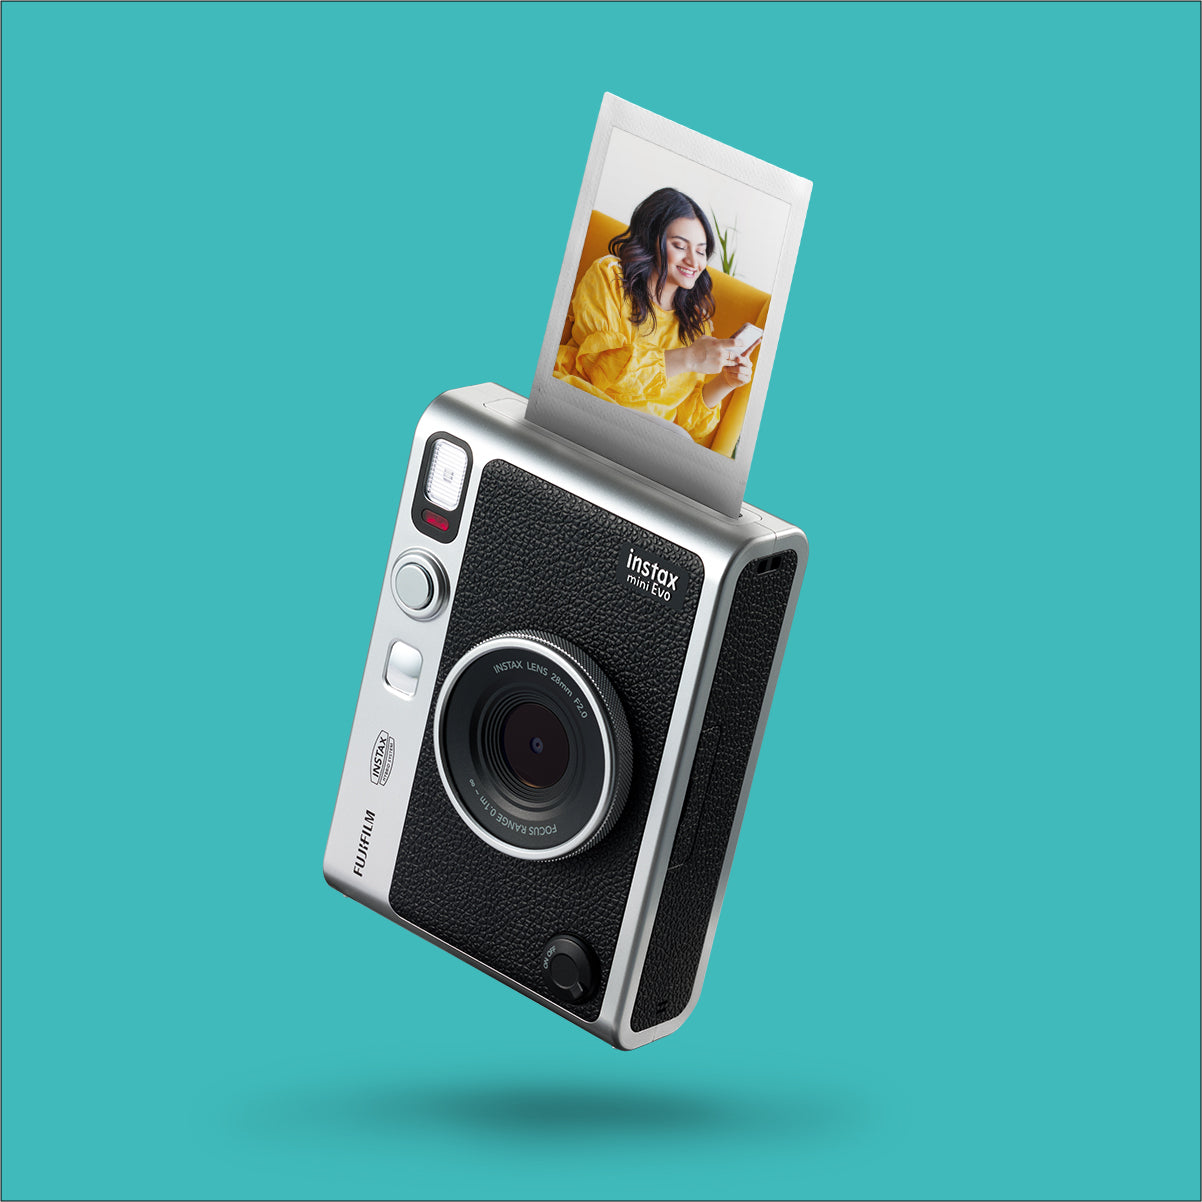 Instax mini EVO Premium Edition | Camera and Printer | Lens